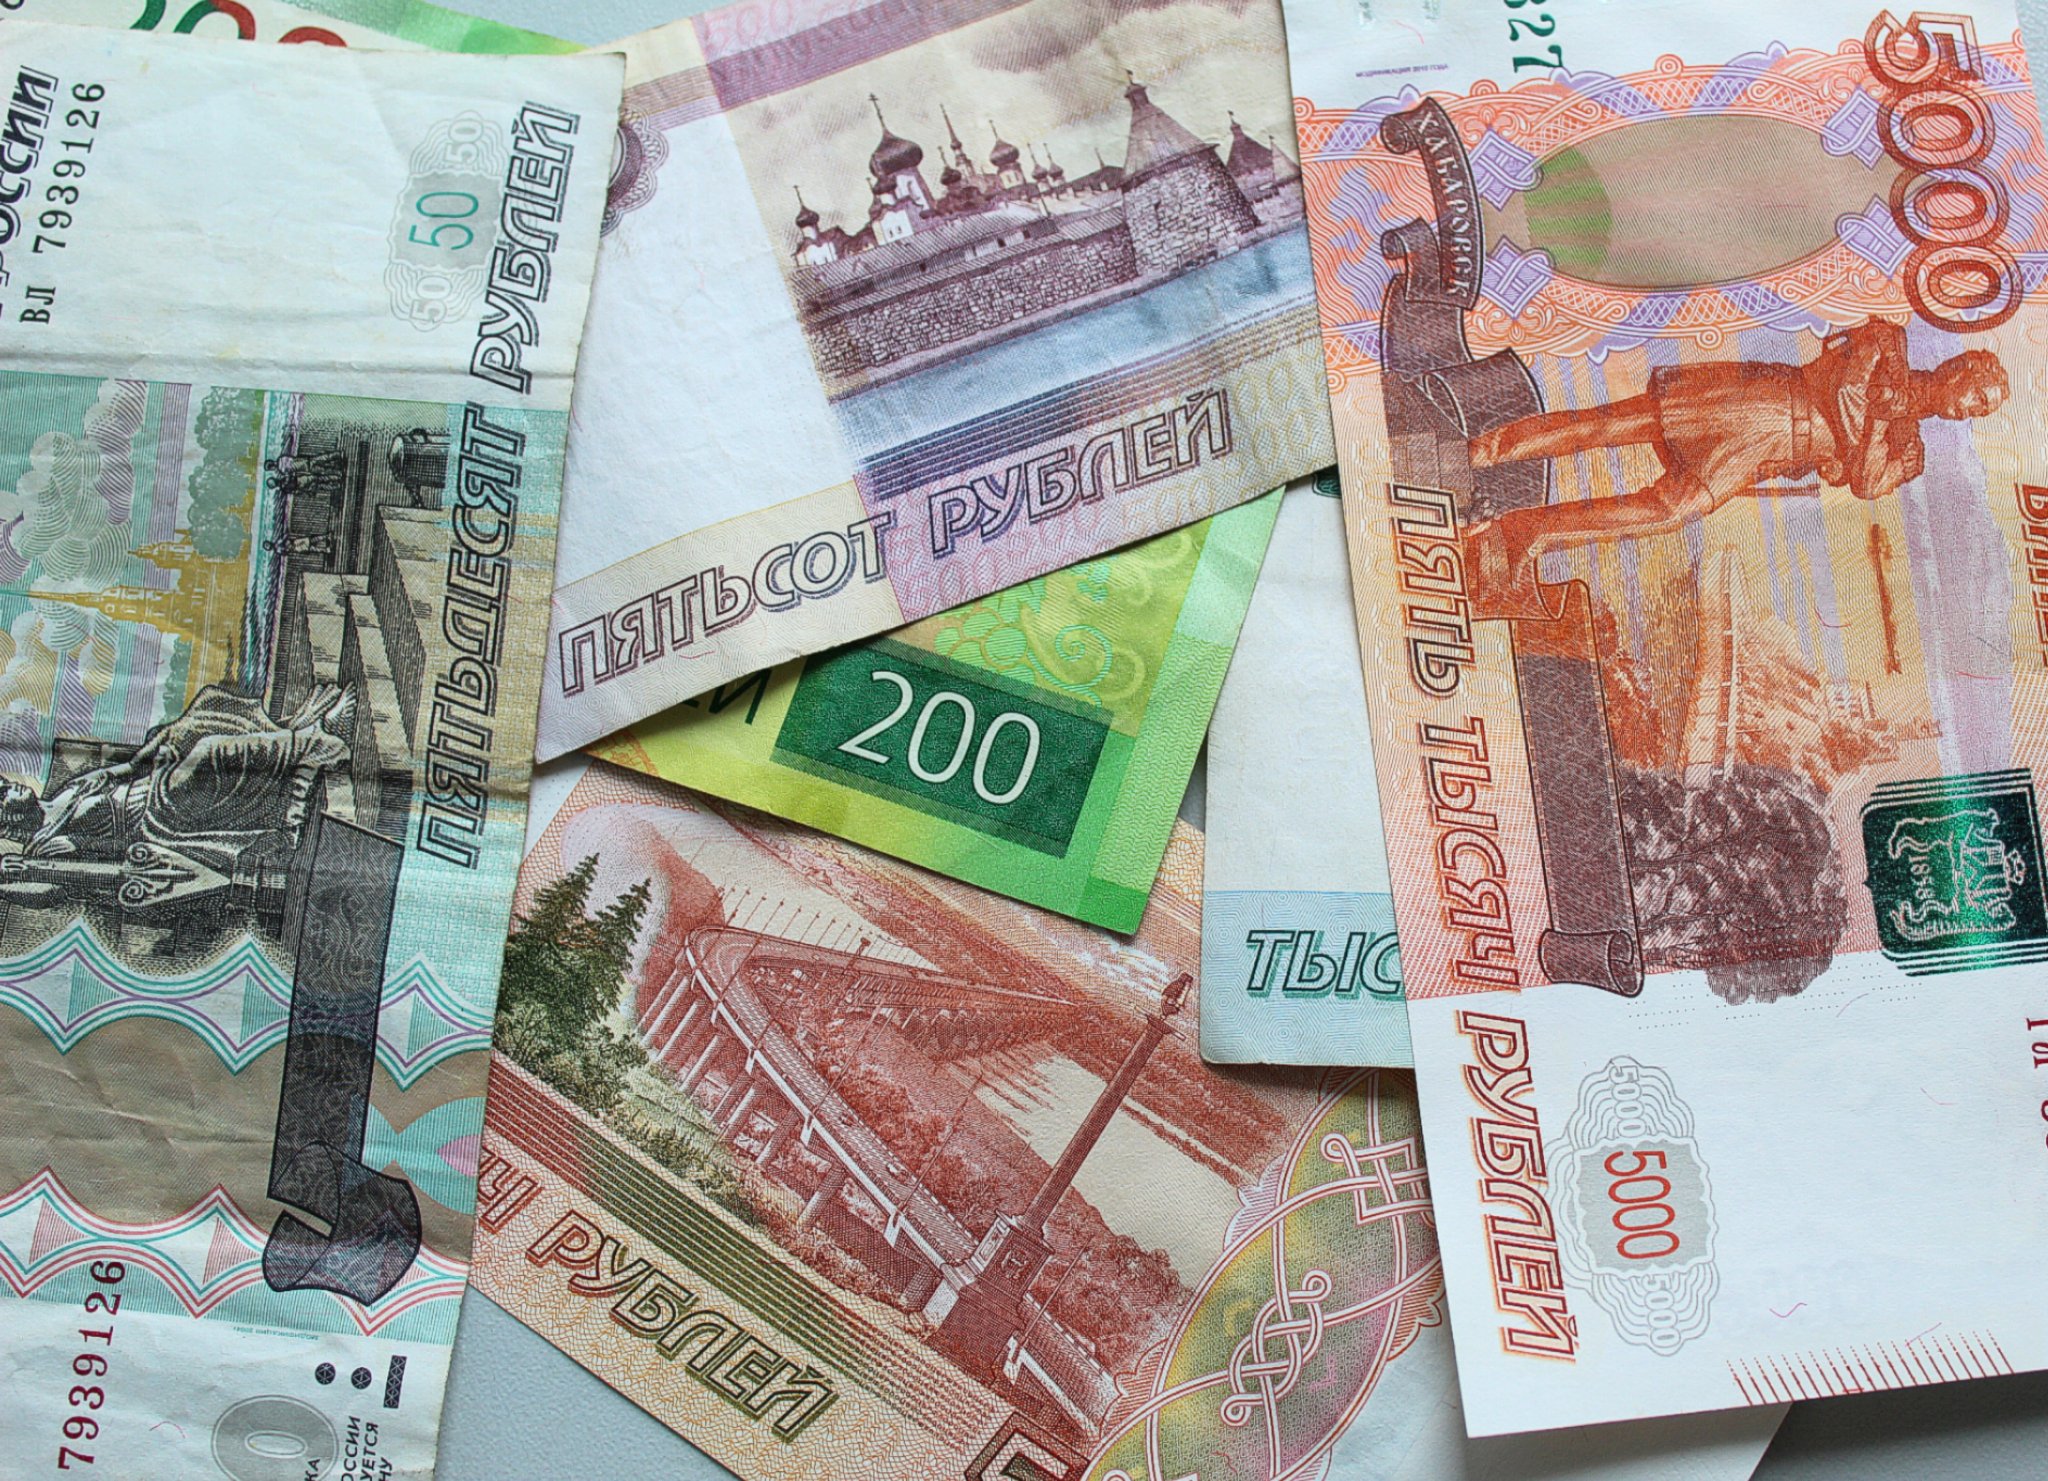 Лотерейные билеты массово скупают во Владивостоке после выигрыша приморца 265 млн рублей